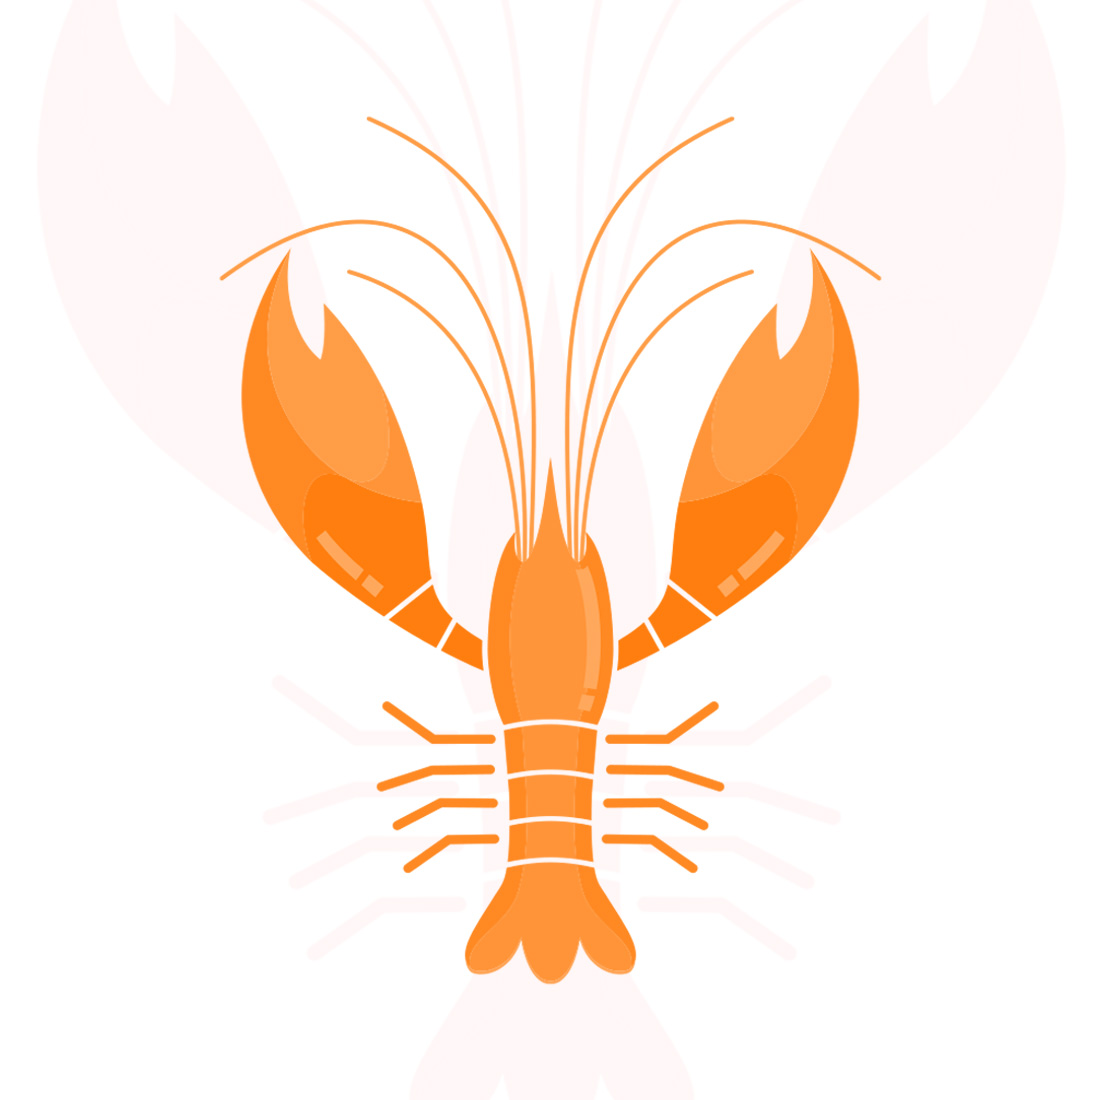 Orange Lobster preview image.